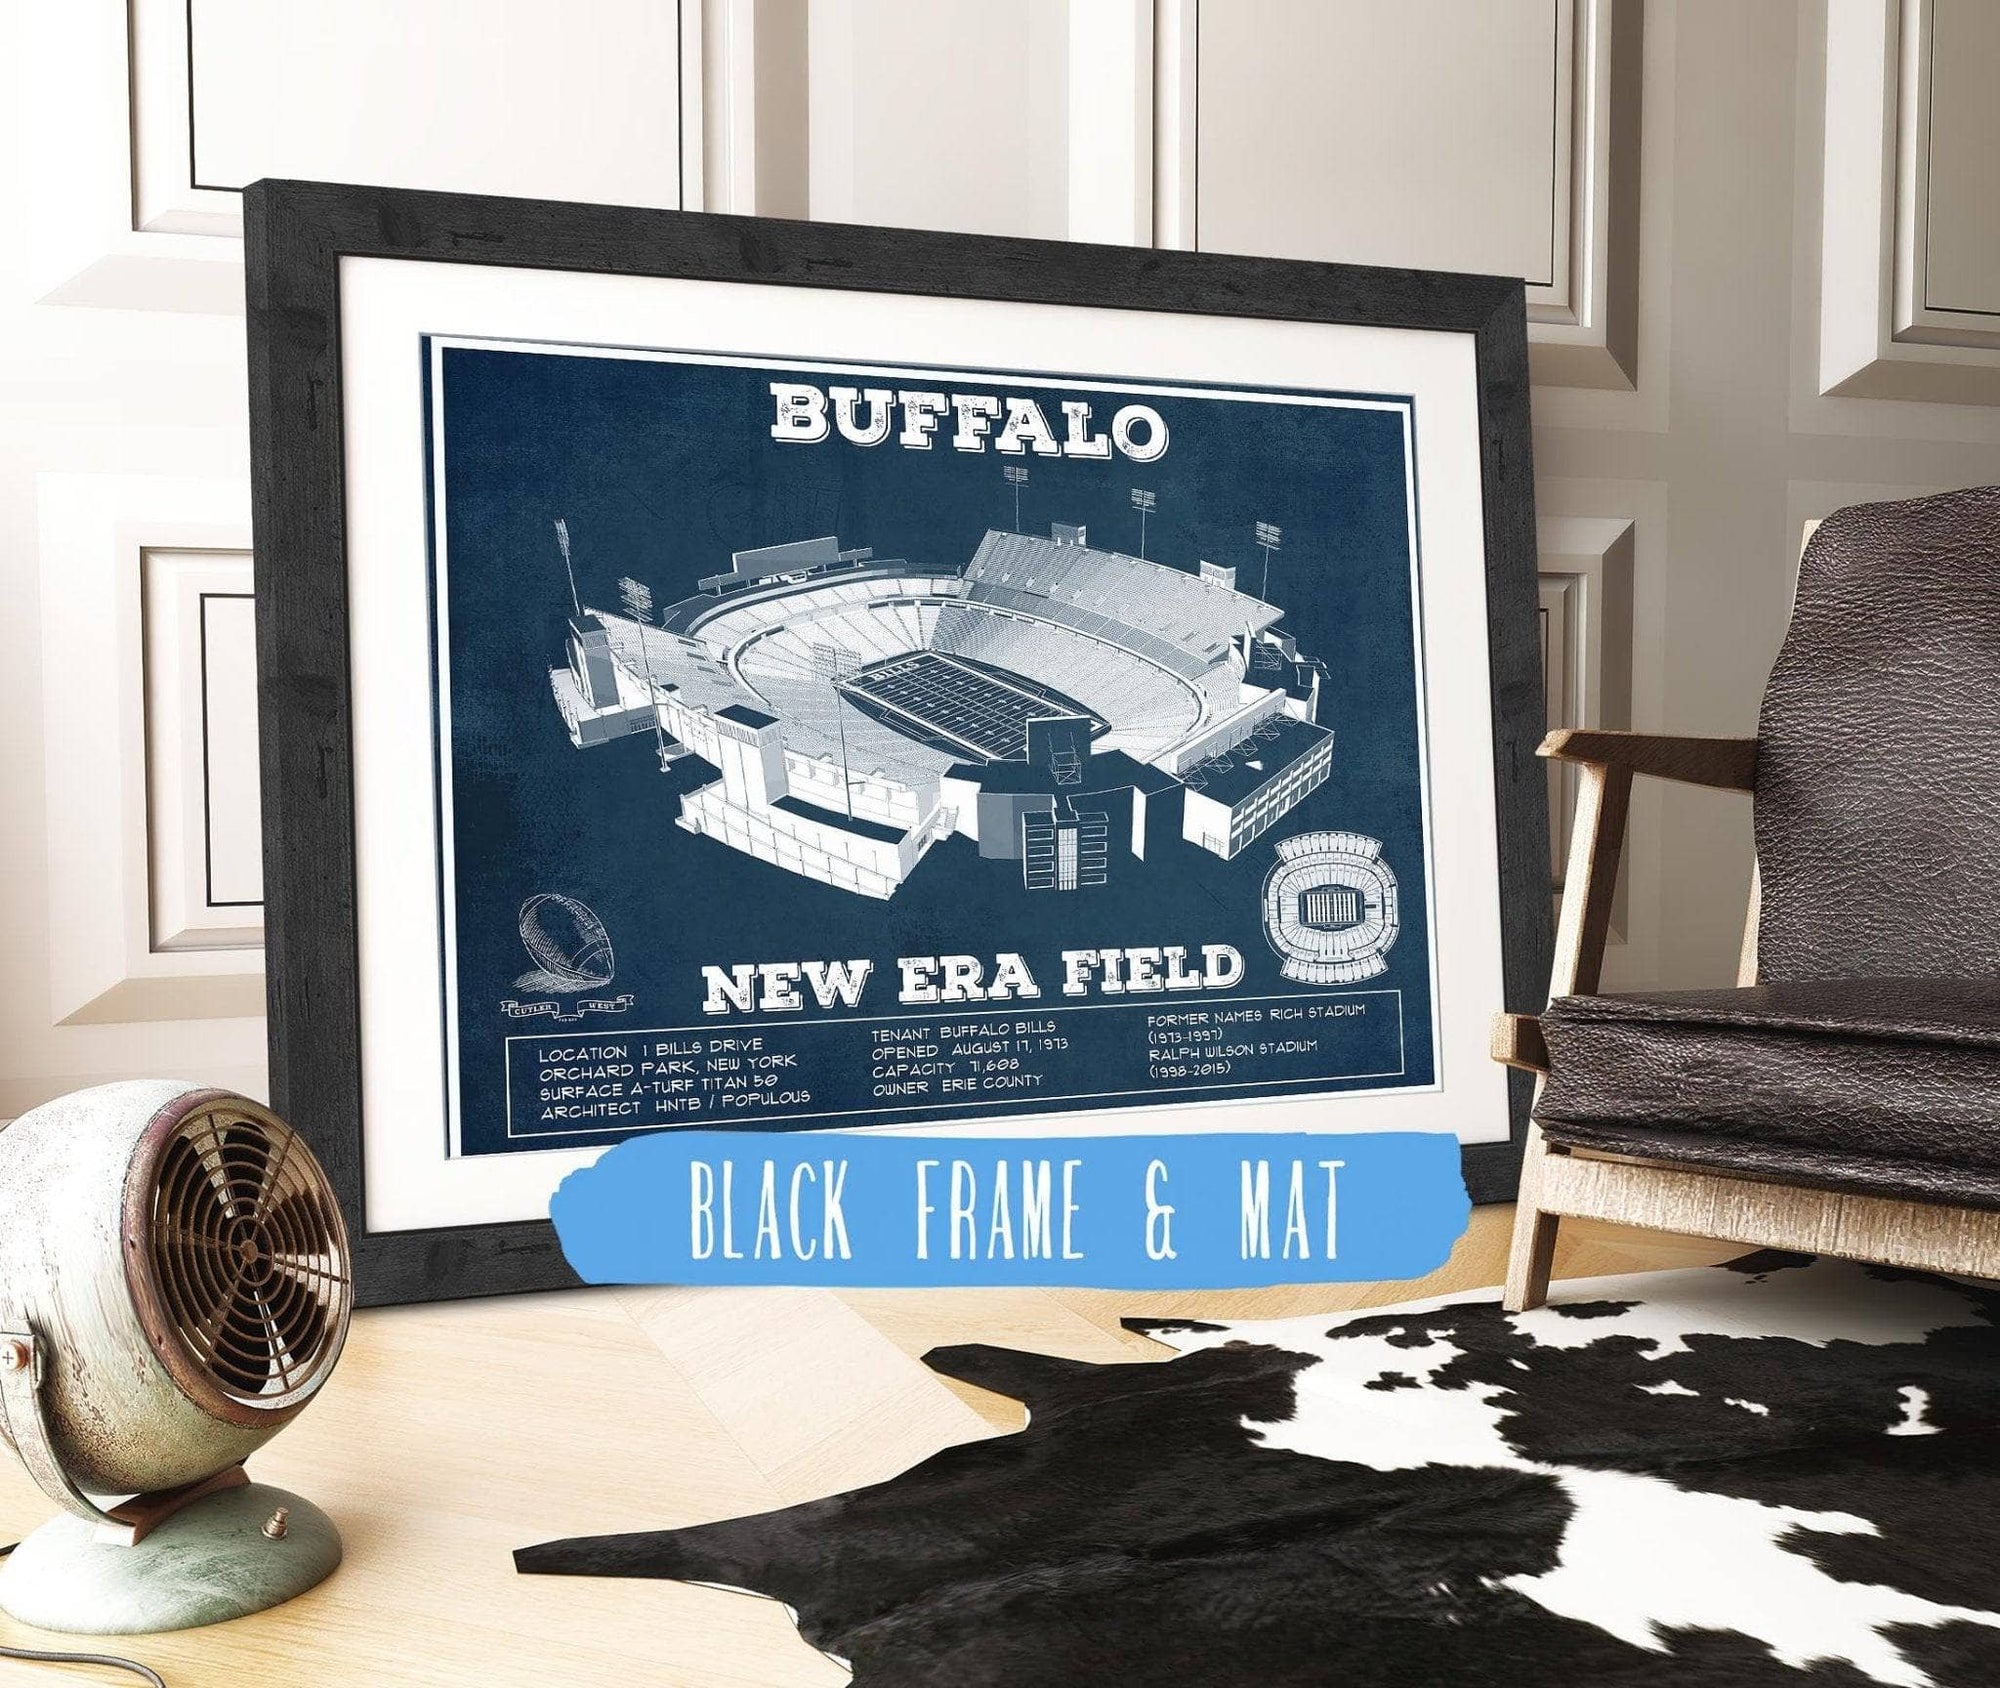 Cutler West Pro Football Collection 14" x 11" / Black Frame & Mat Buffalo Bills - New Era Field - Vintage Football Print 698474966-TOP